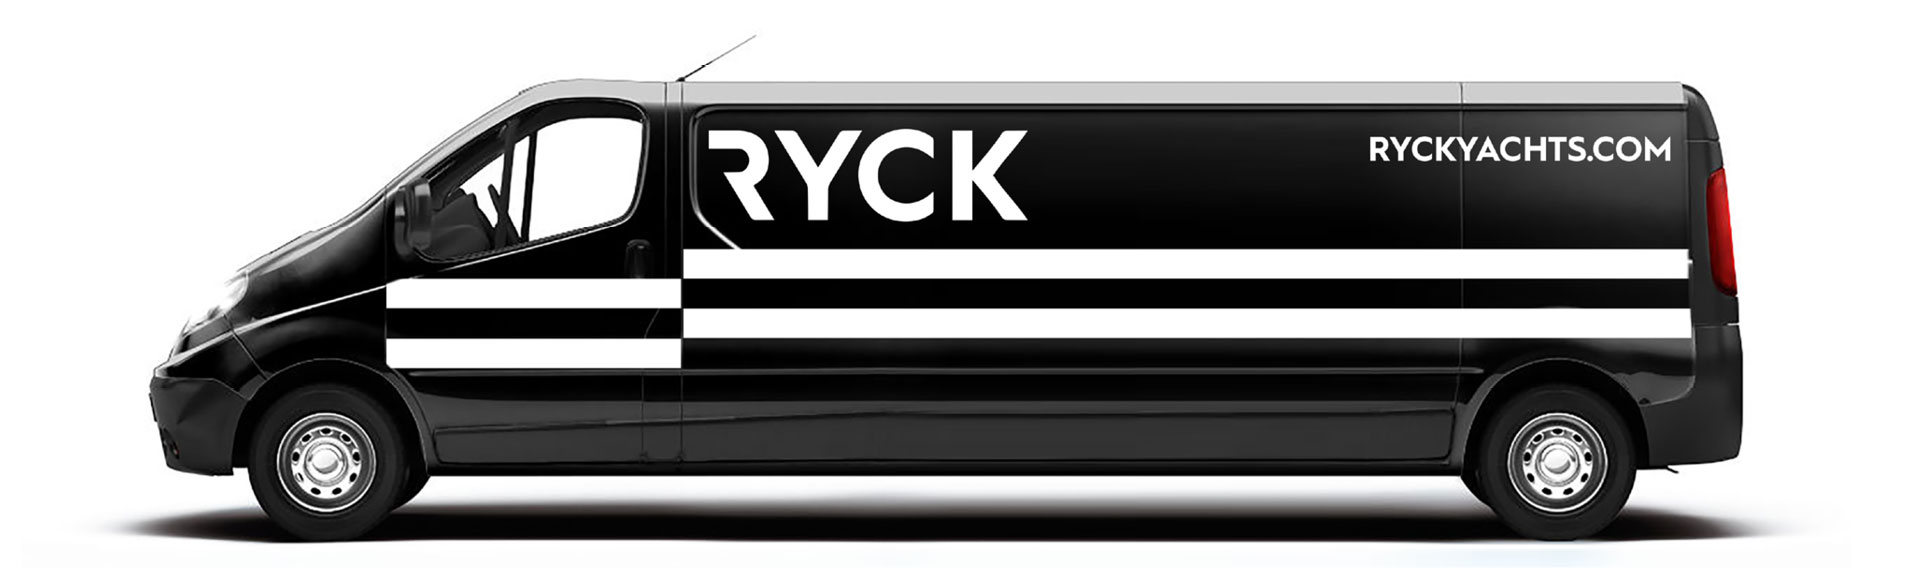 Ryck_Rover